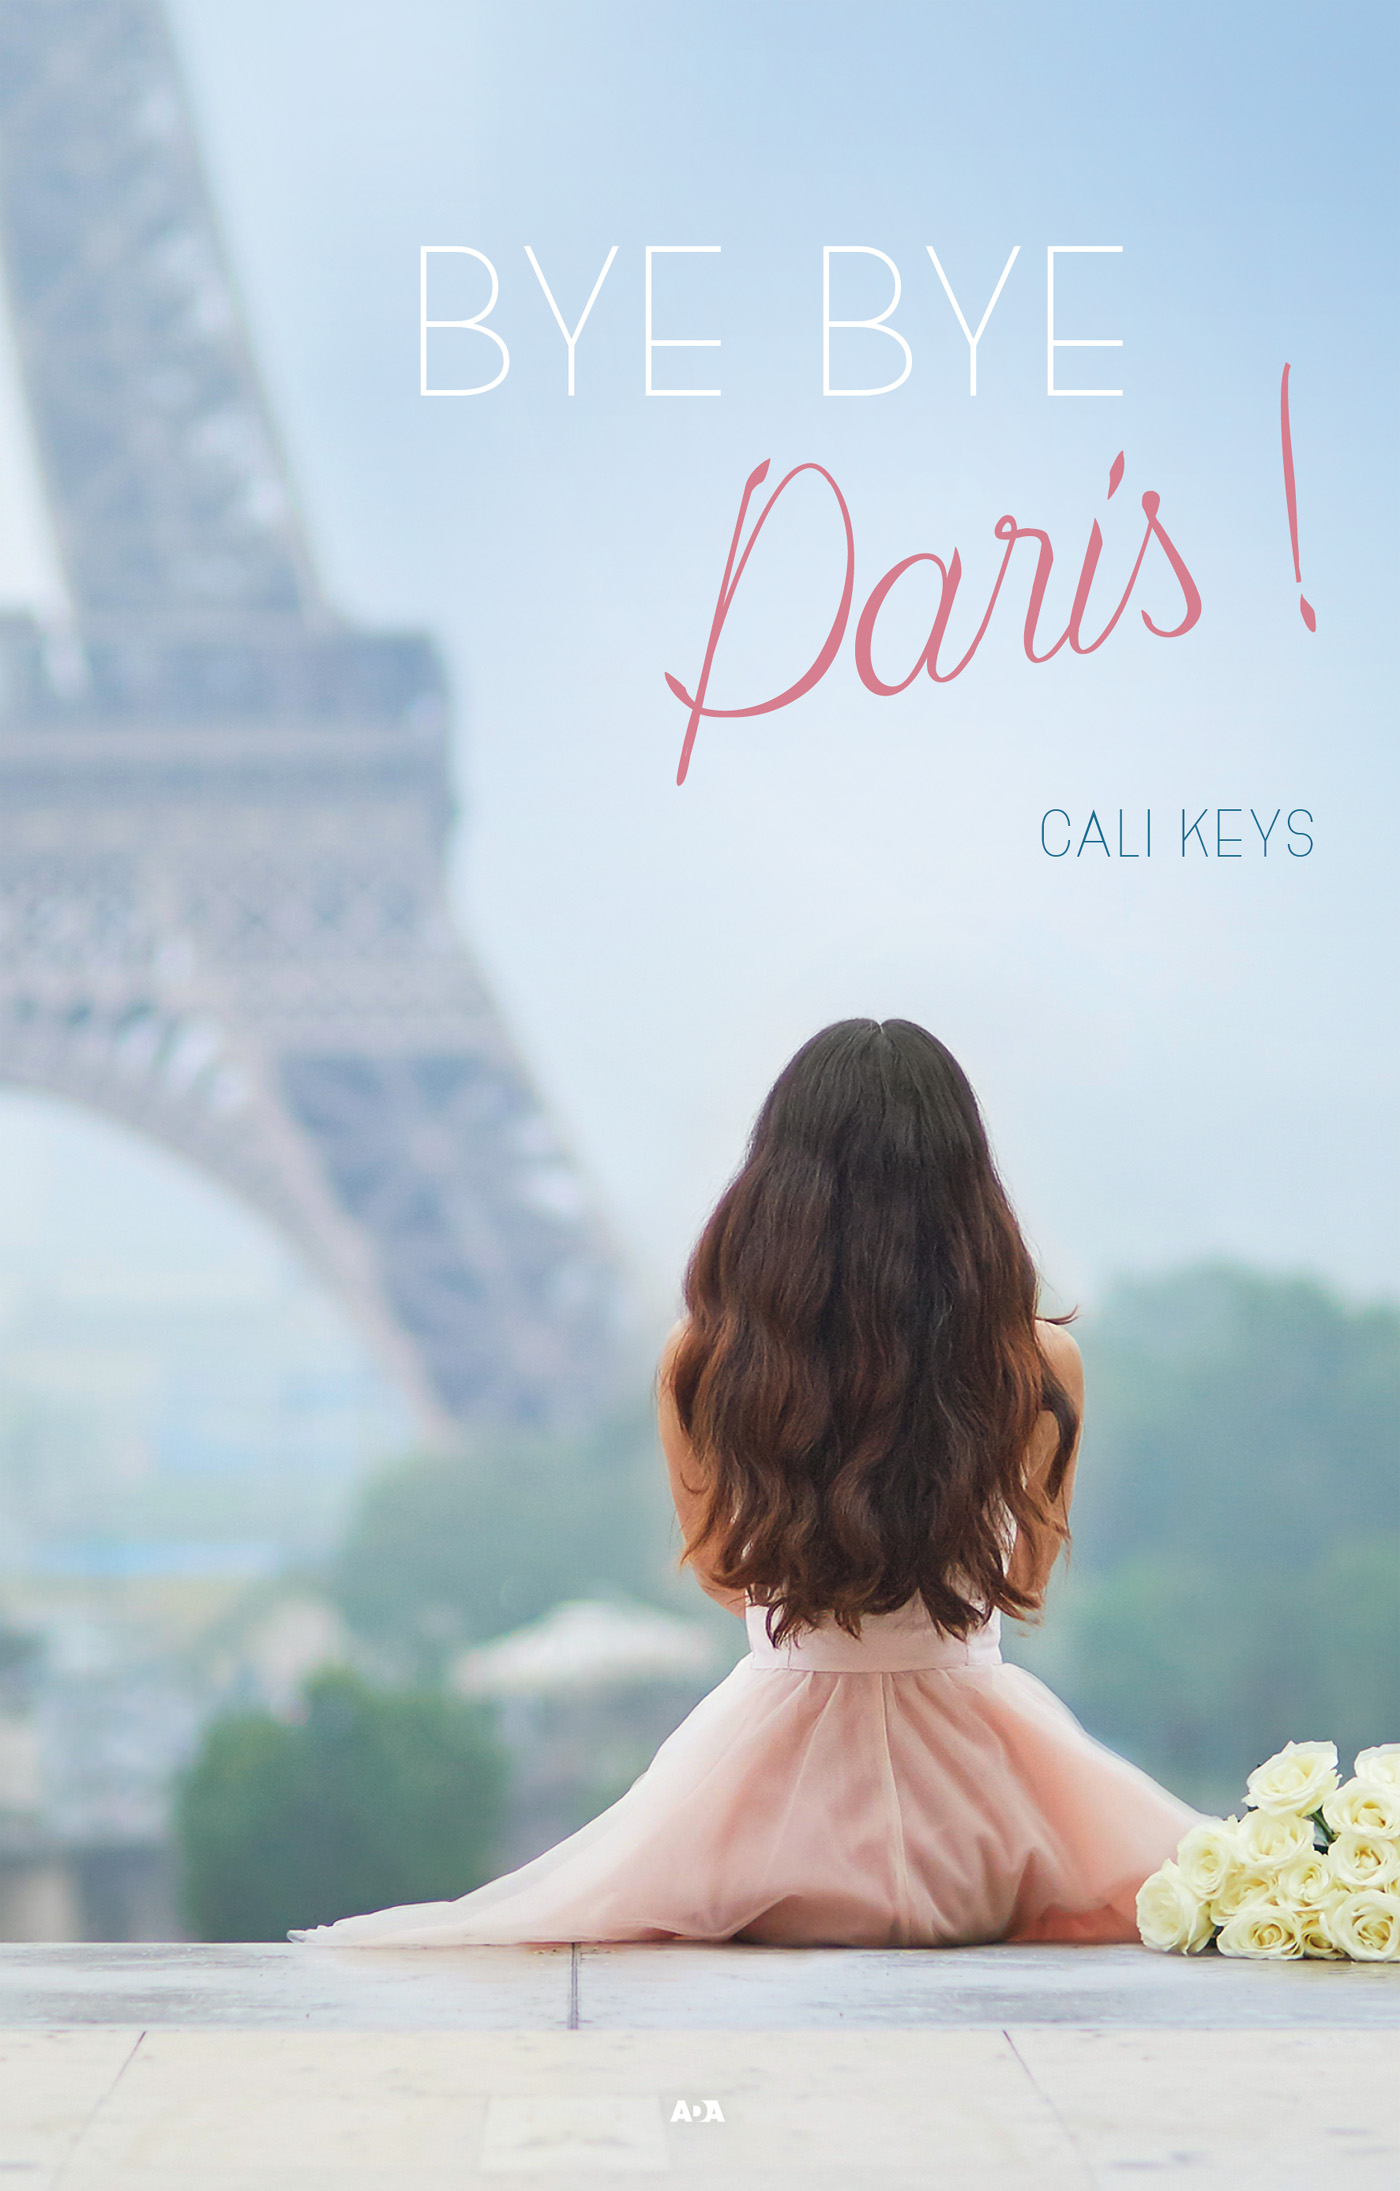 Bye Bye Paris!